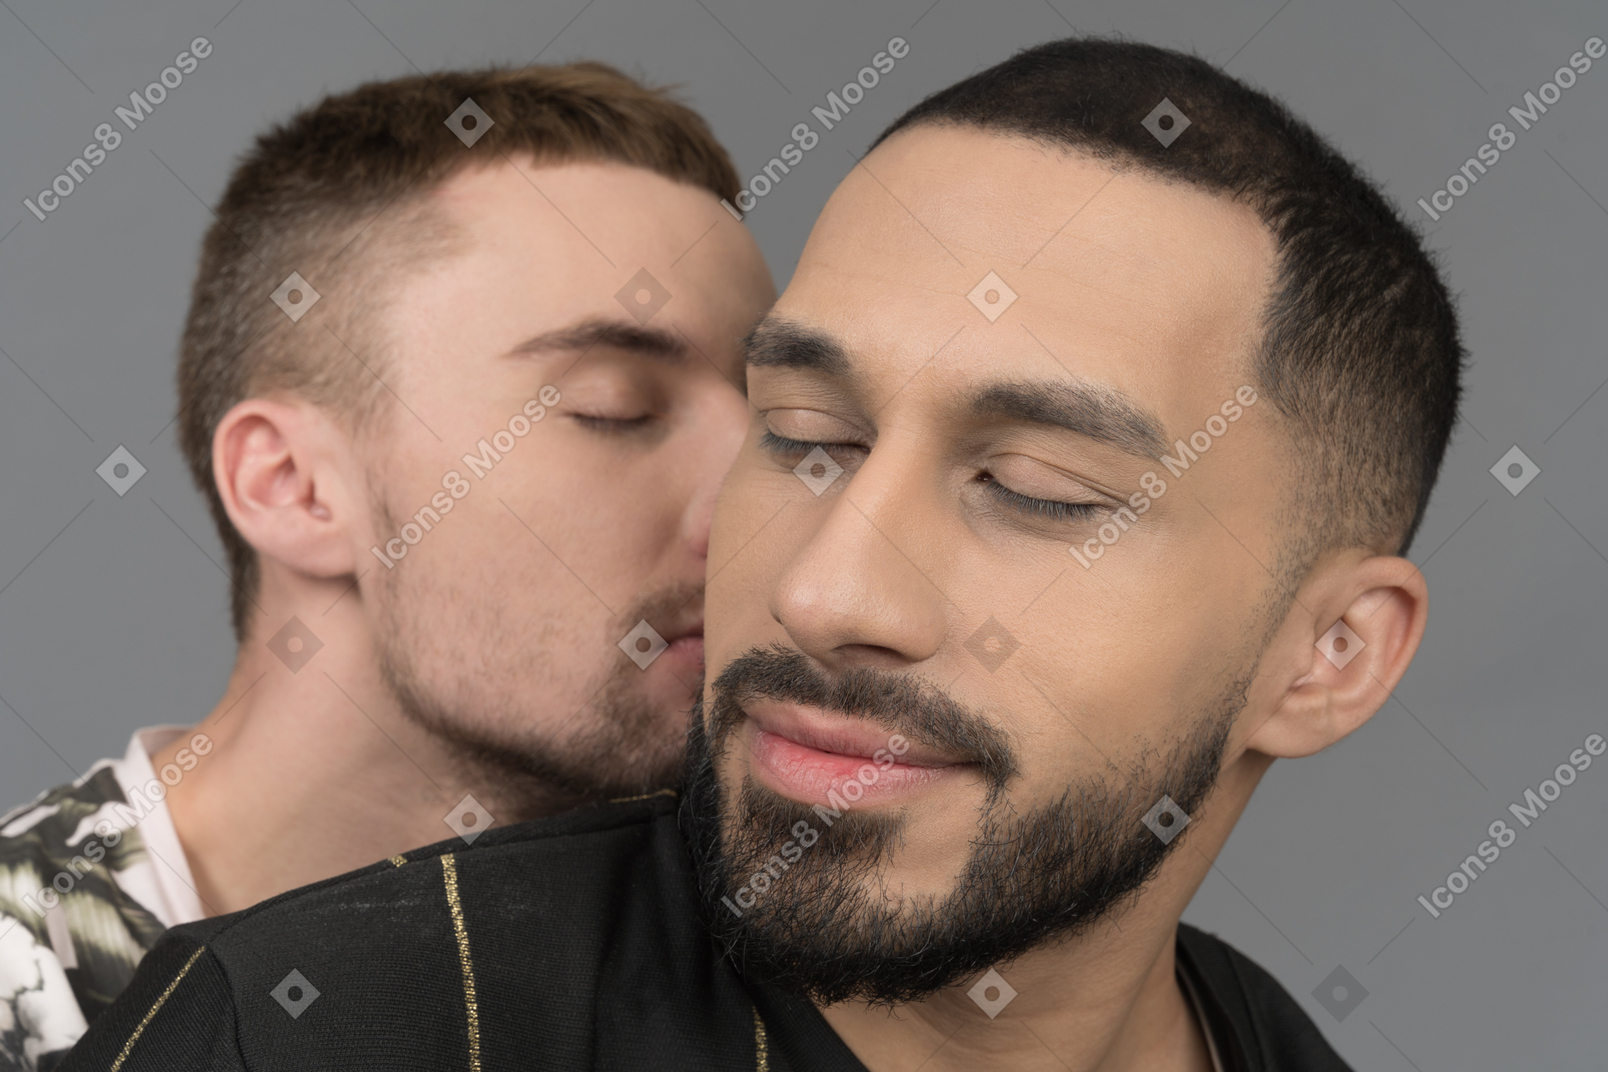 그의 남자 친구에게 키스하는 젊은 남자의 클로즈업